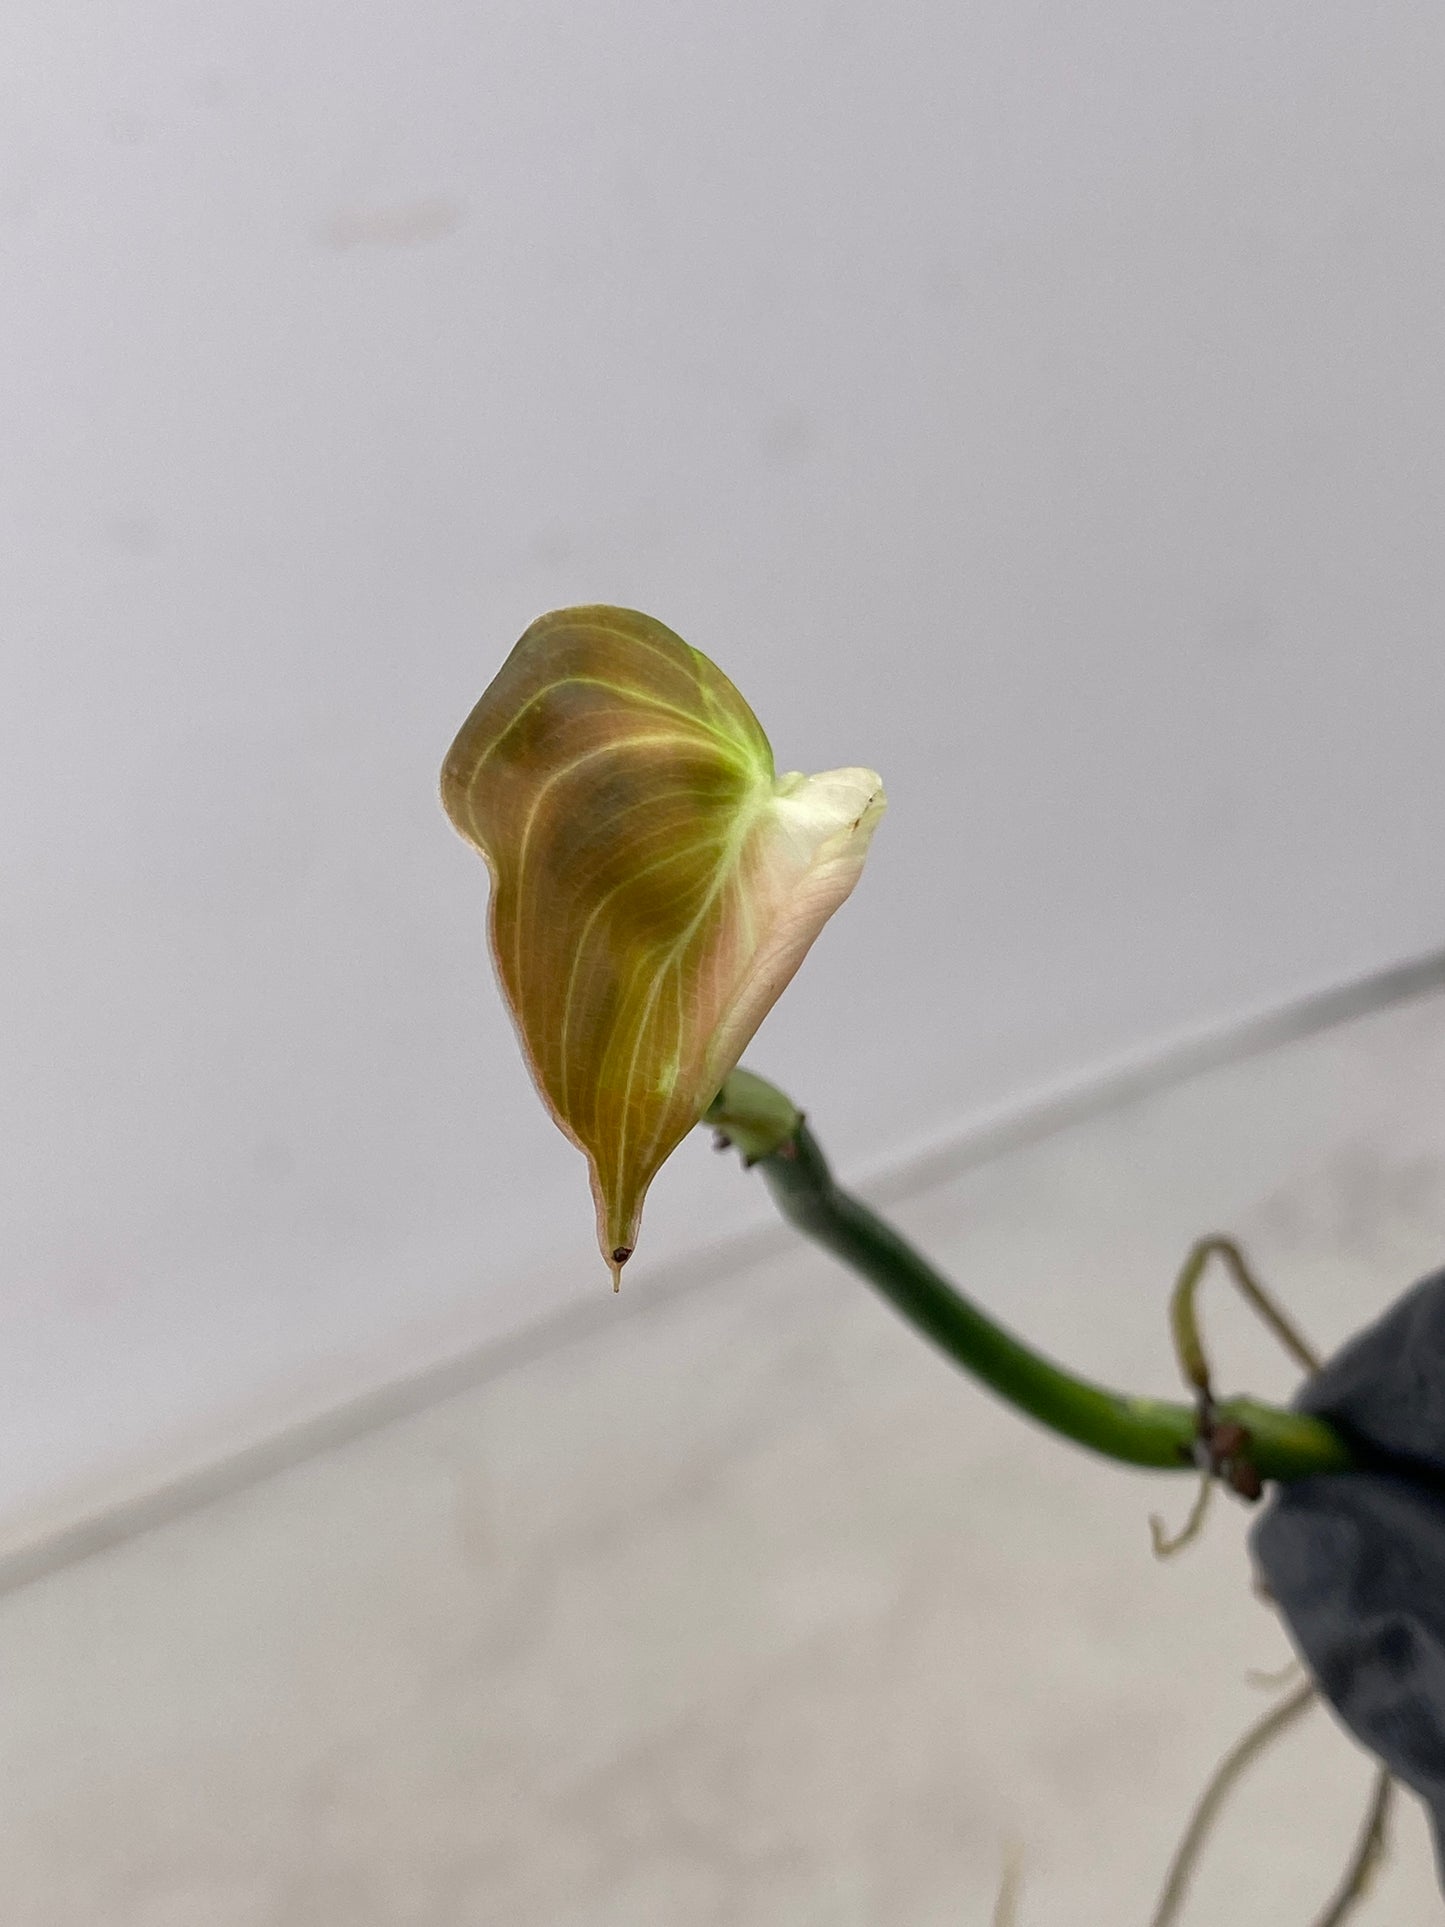 FOR ROBERT: Philodendron Melanochrysum Variegated 1 leaf multiple nodes